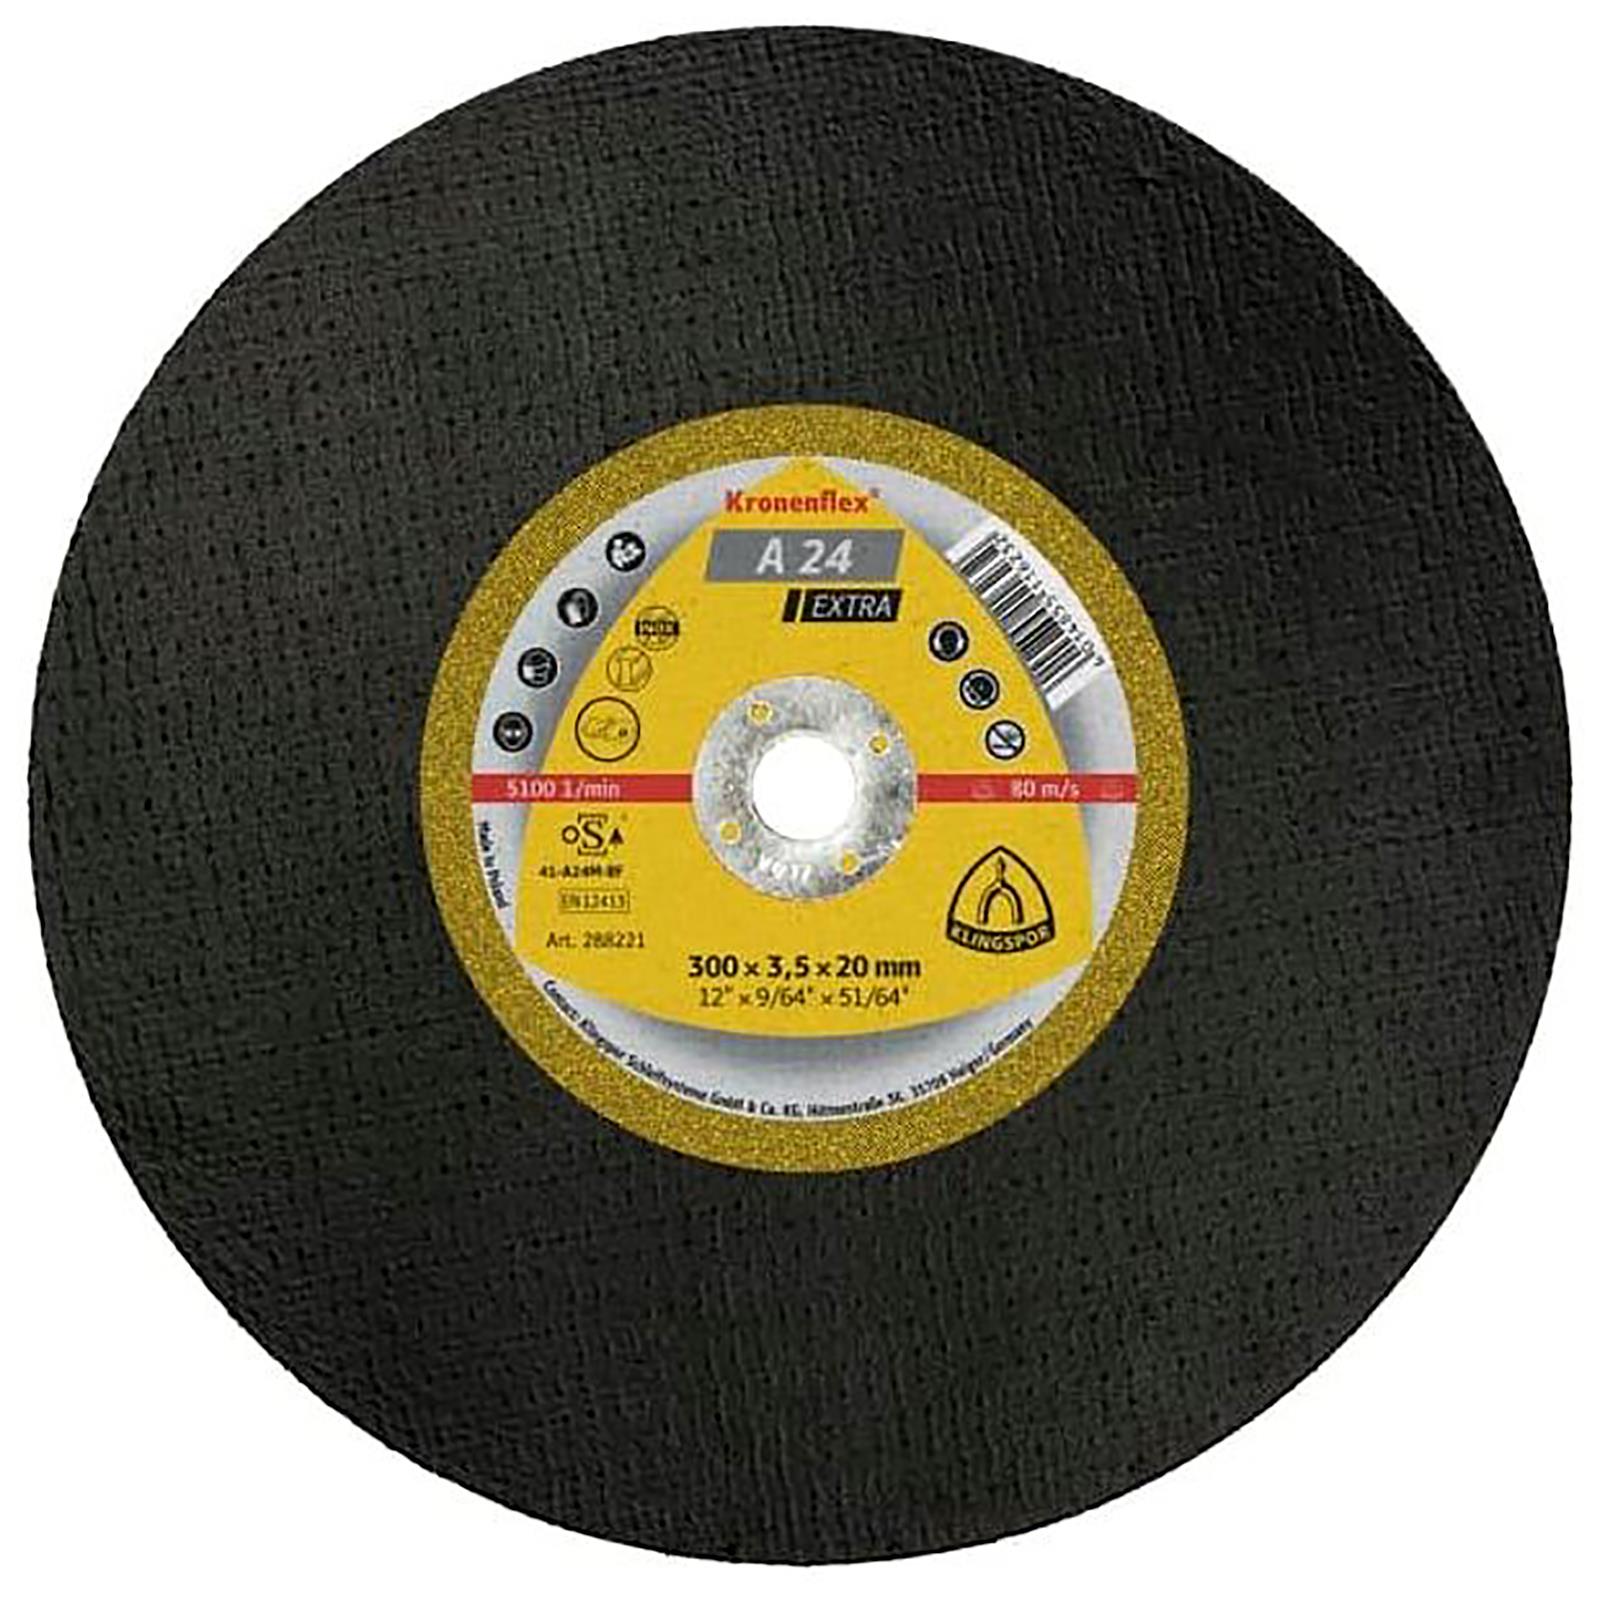 Klingspor Cutting Disc 300mm x 3.5mm x 20mm Bore Cut Off Wheel Kronenflex A24 Extra